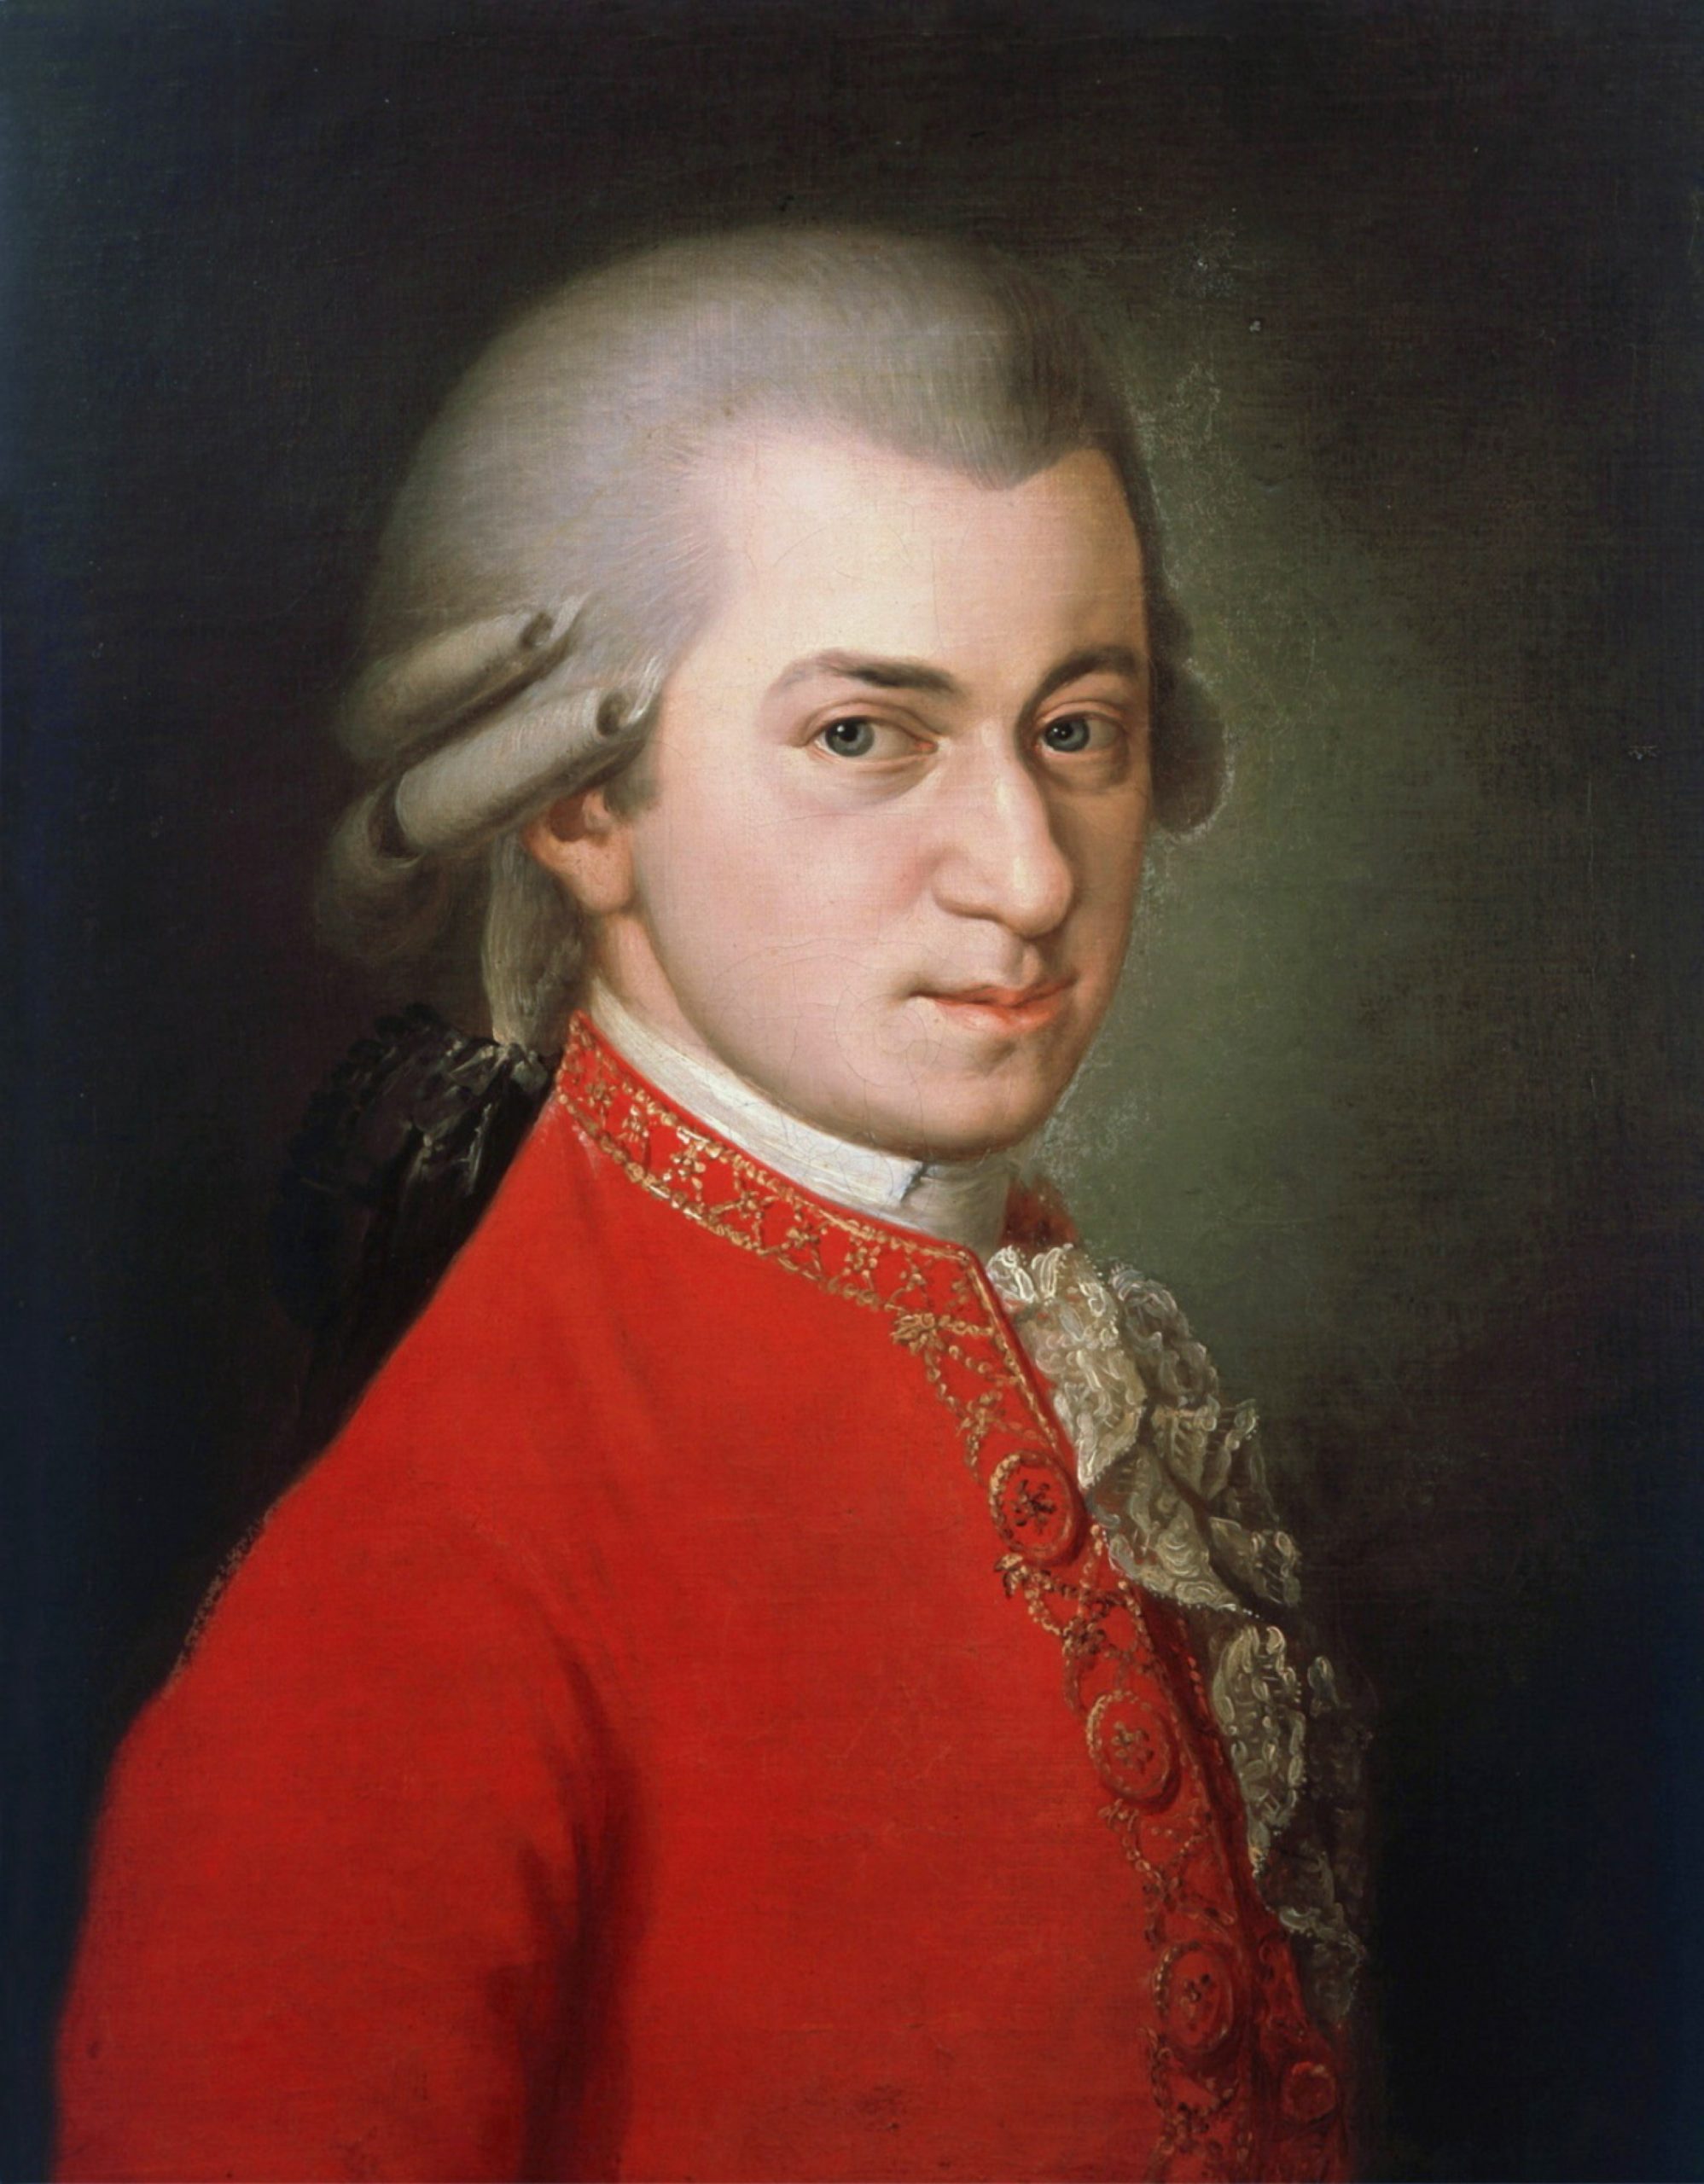 Portrait posthume de Mozart peint par Barbara Krafft en 1819